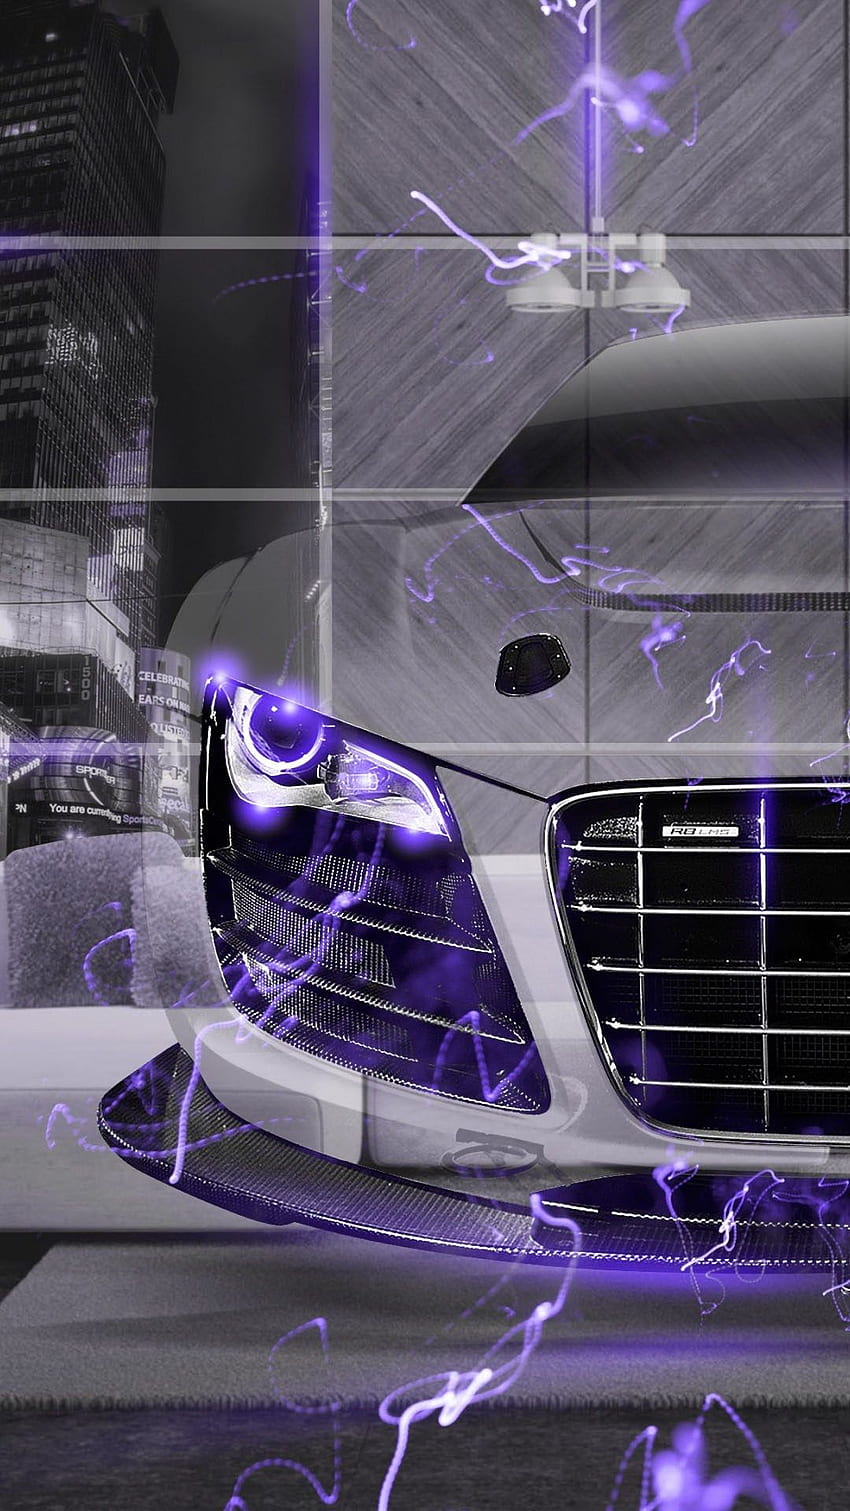 Audi R8 Fantasy Crystal Home Energy Car 2015 iPhone 6 / 6 Plus HD phone wallpaper